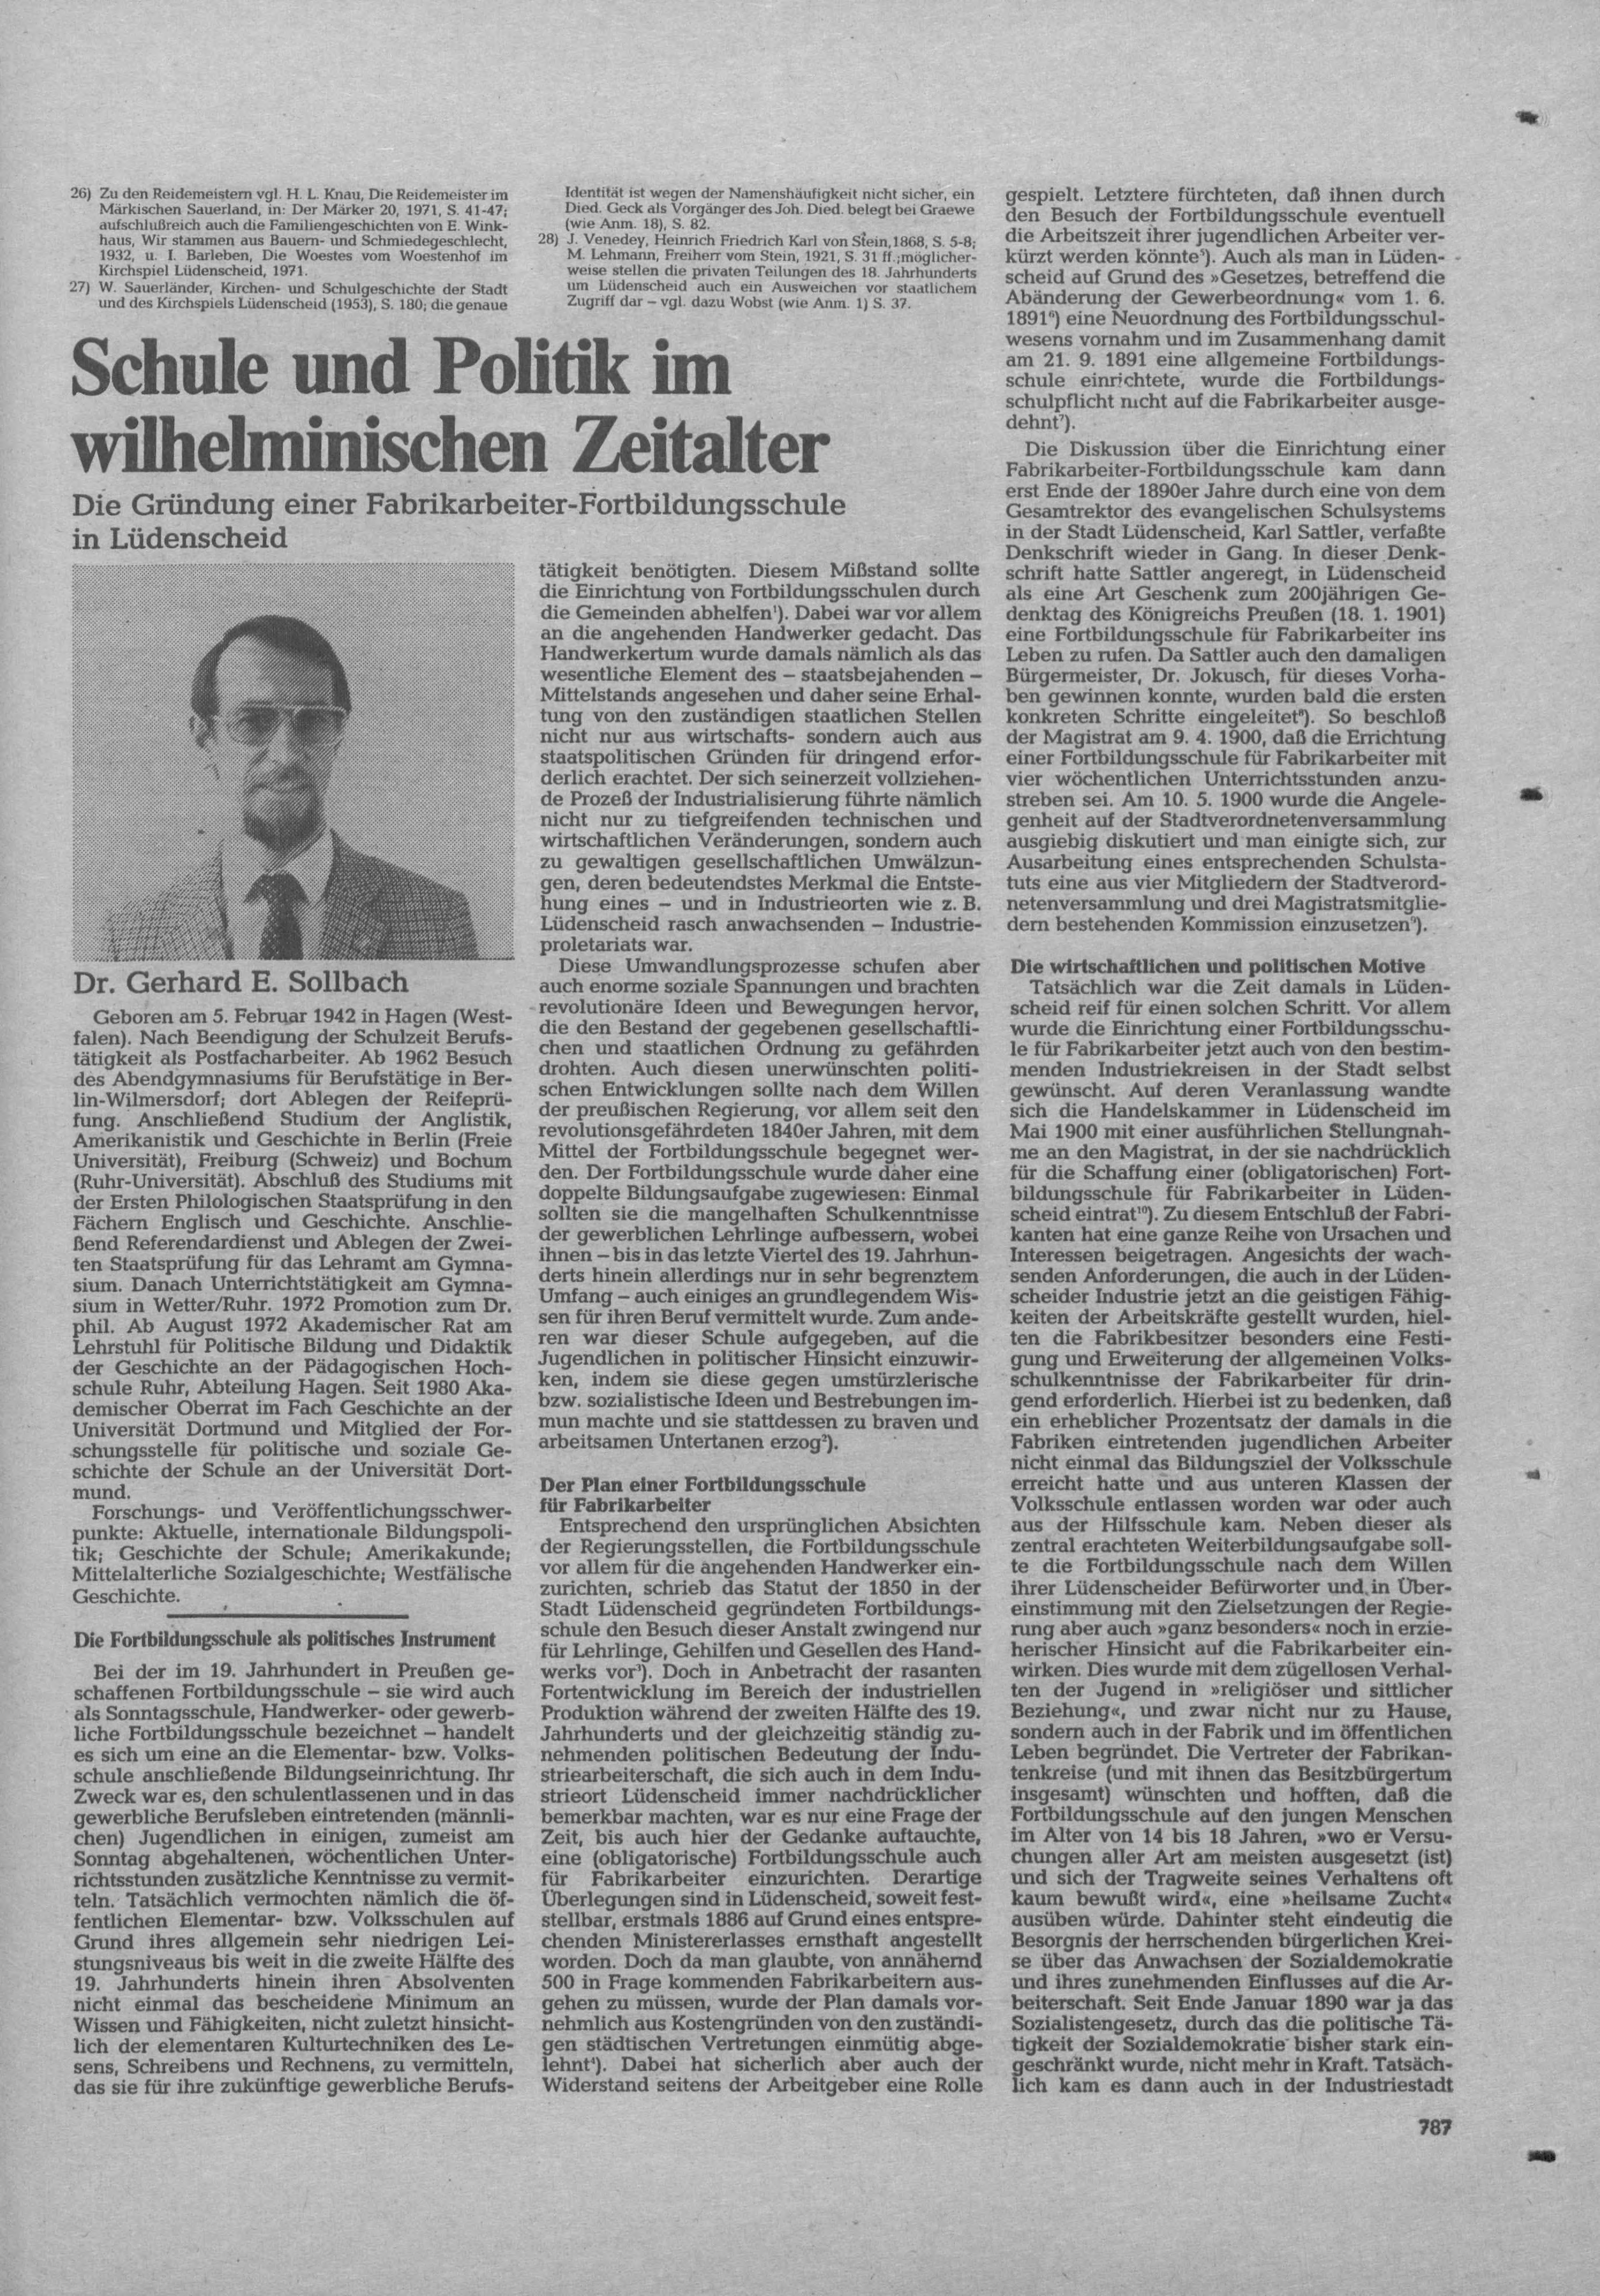 26) Zu den Reidemeistem vgl- H. L- Knau, Die Reidemeister im Märkischen Sduerland, in: Der Märker 20, 1971, S 41-47,aufschlußreich auch die Familiengeschichten von E.